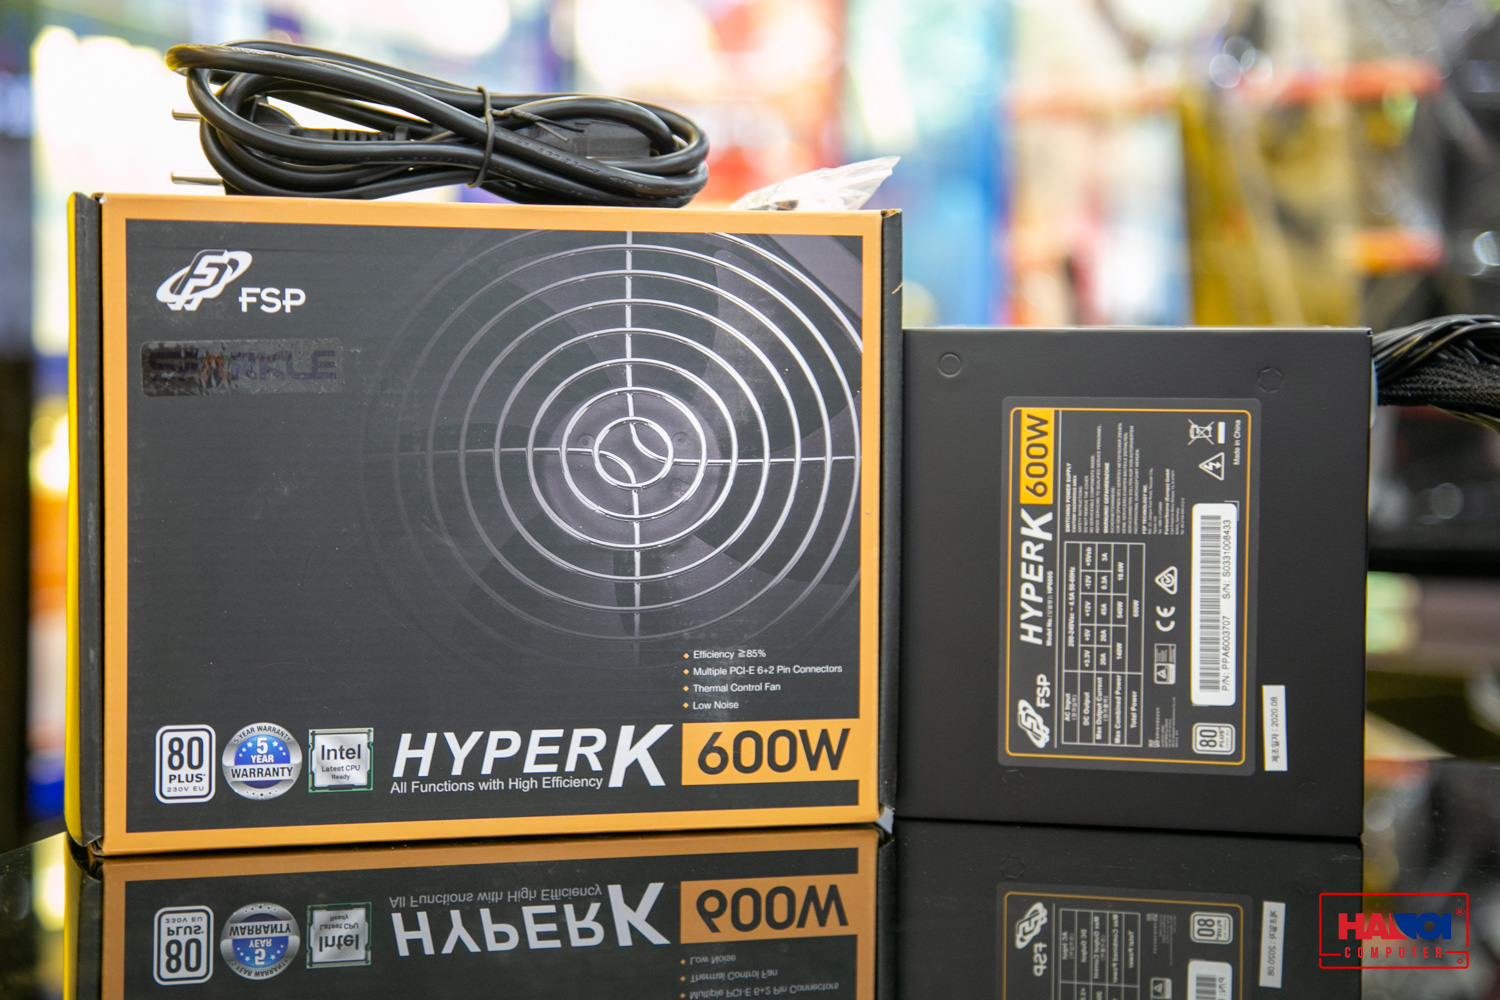 Nguồn FSP Power Supply HYPER K Series HP600 Active PFC (80 Plus Standard/Màu Đen) giới thiệu